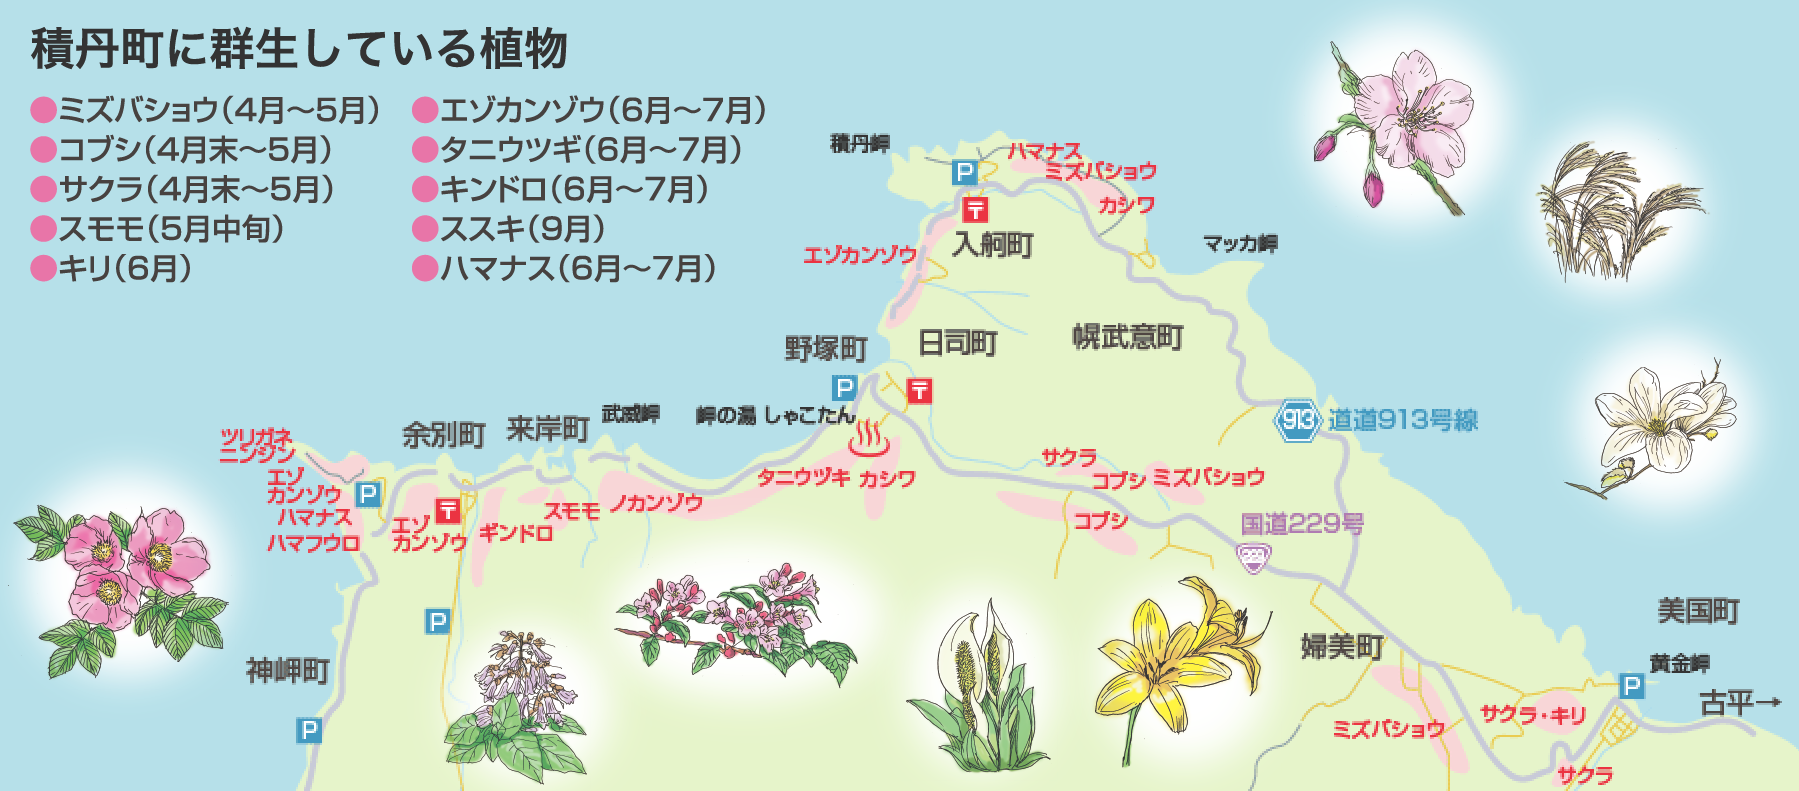 積丹の草花マップ